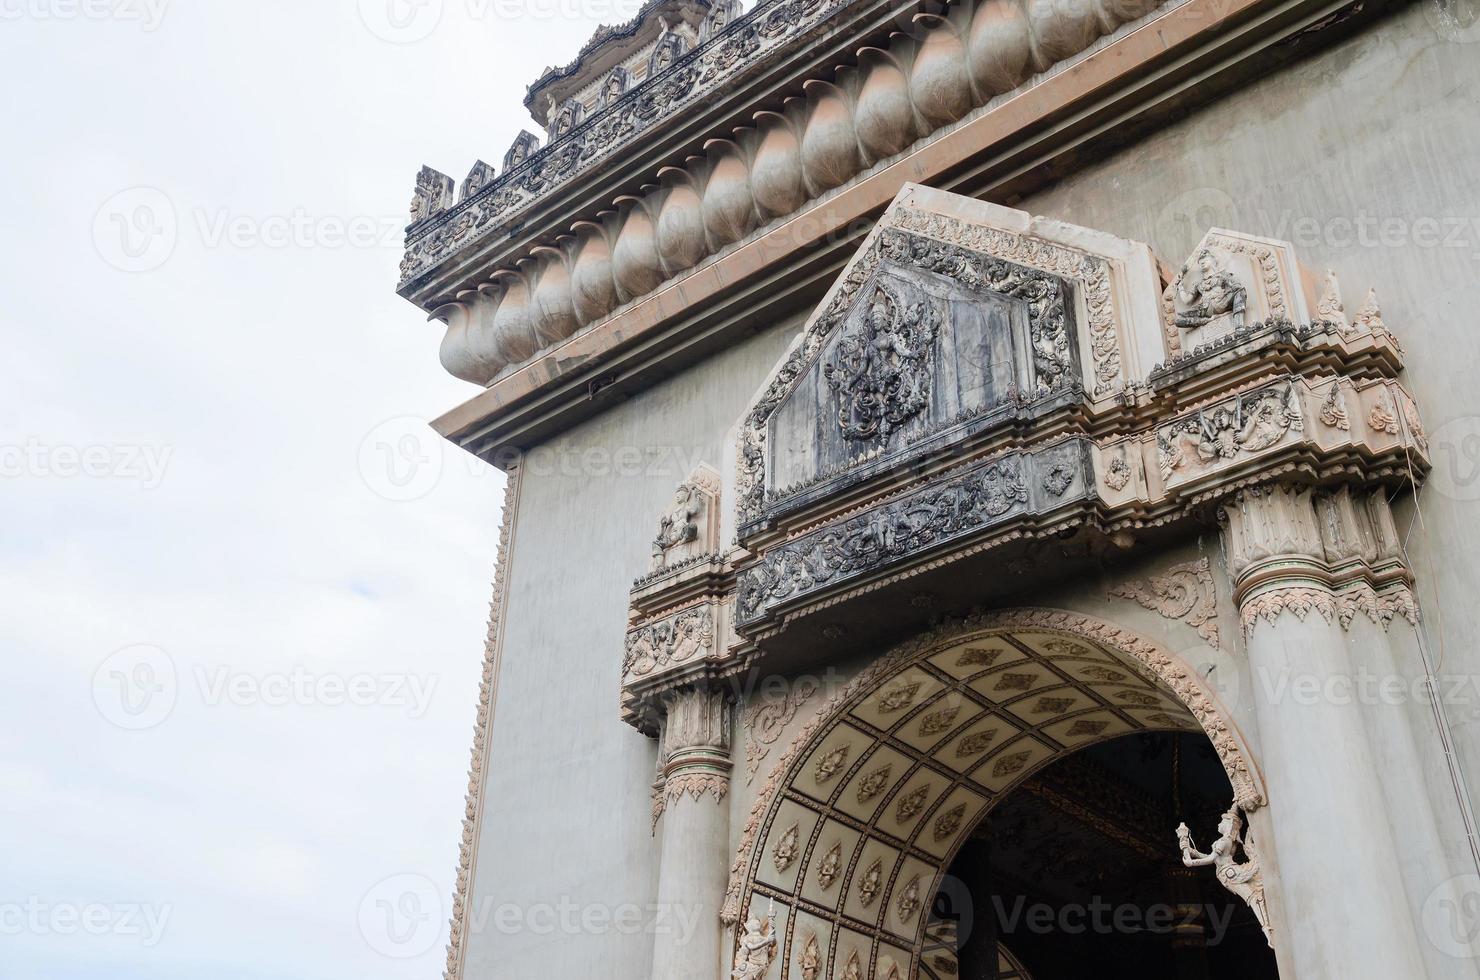 dekoration detalj av patuxai seger monument eller seger Port landmärke av vientiane stad av laos foto